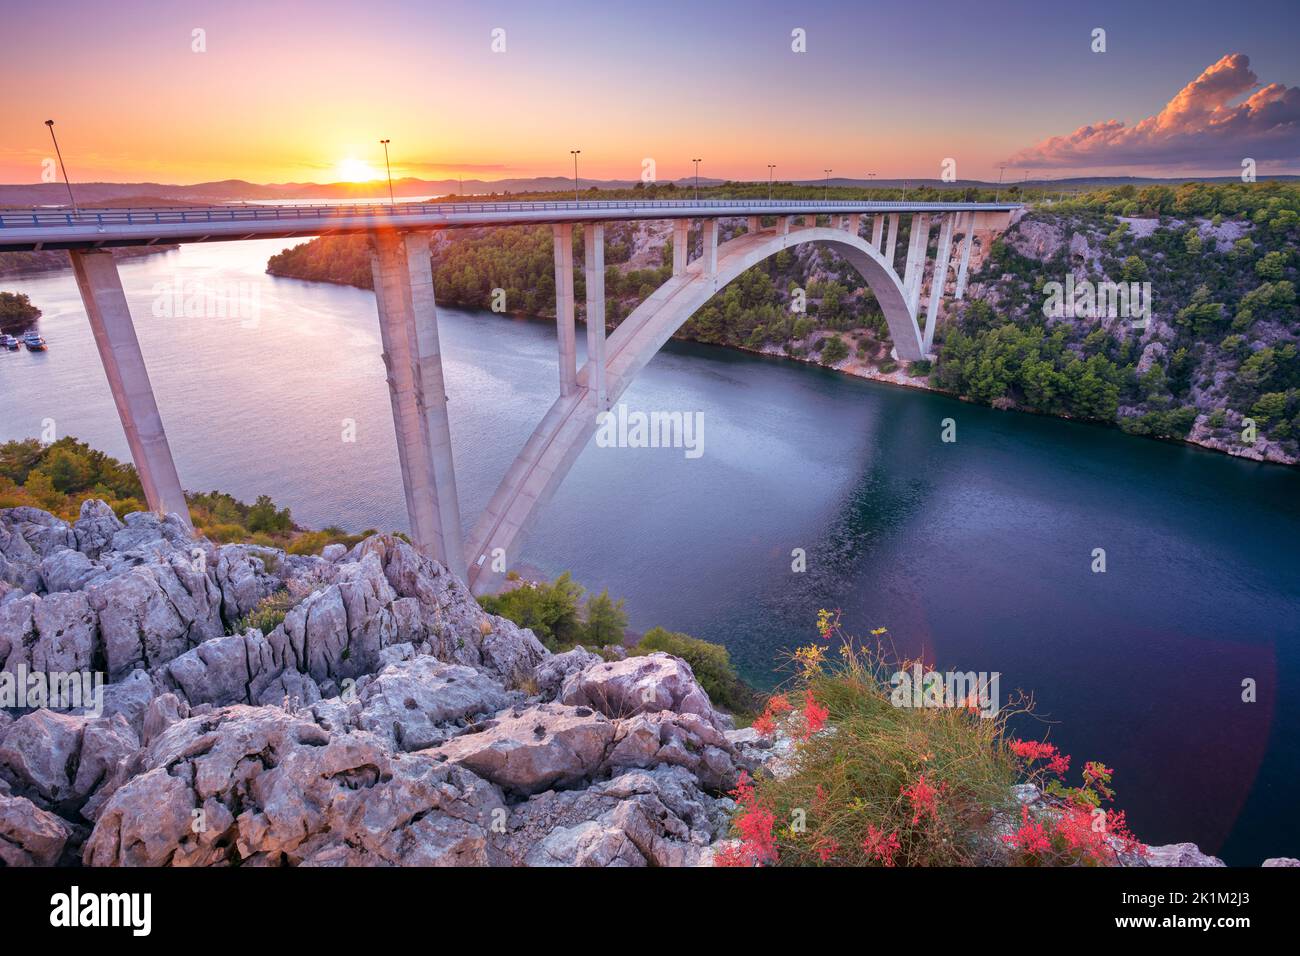 Ponte di Krka, Croazia. Immagine del ponte ad arco in cemento ponte di Krka che attraversa il fiume Krka al tramonto. Foto Stock